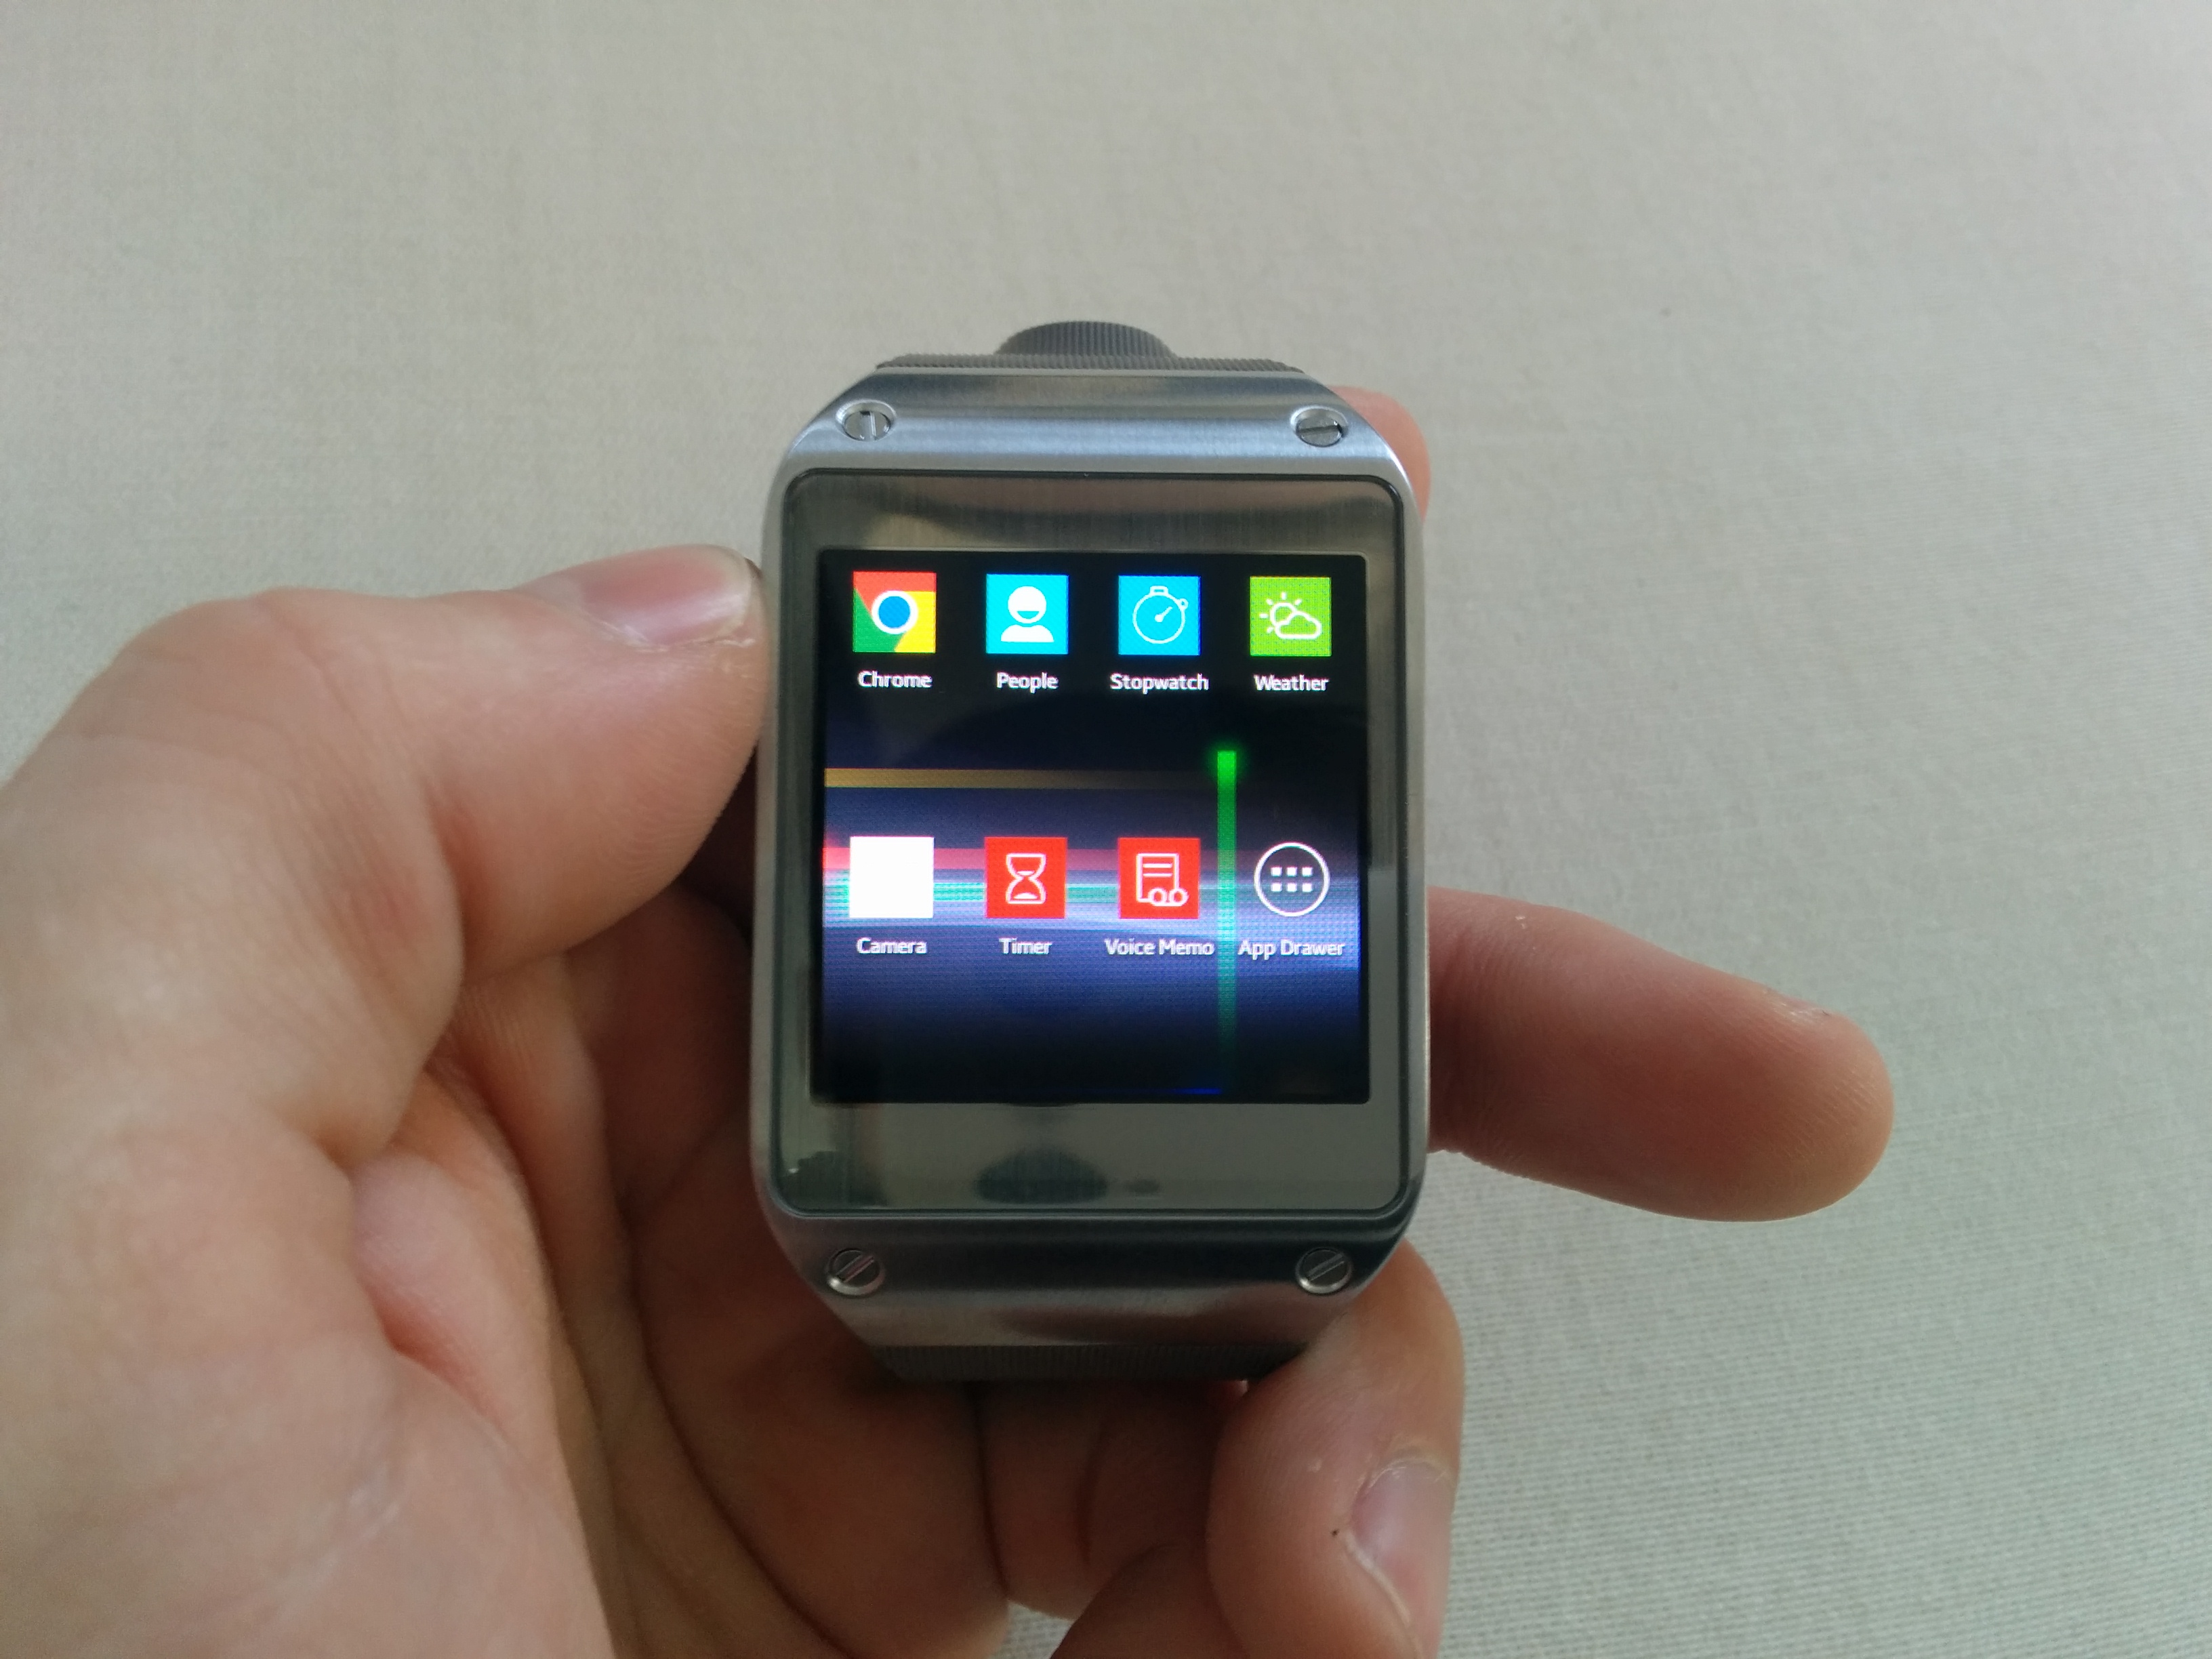 IMG 20131120 124500 | galaxy gear | ปลดล็อก Galaxy Gear ให้เป็นนาฬิกาแอนดรอยด์เต็มรูปแบบ มี Playstore และใช้งานกับแอนดรอยด์ยี่ห้ออื่นๆ ได้ จากรอมและการวิธีการแฟลชเครื่อง